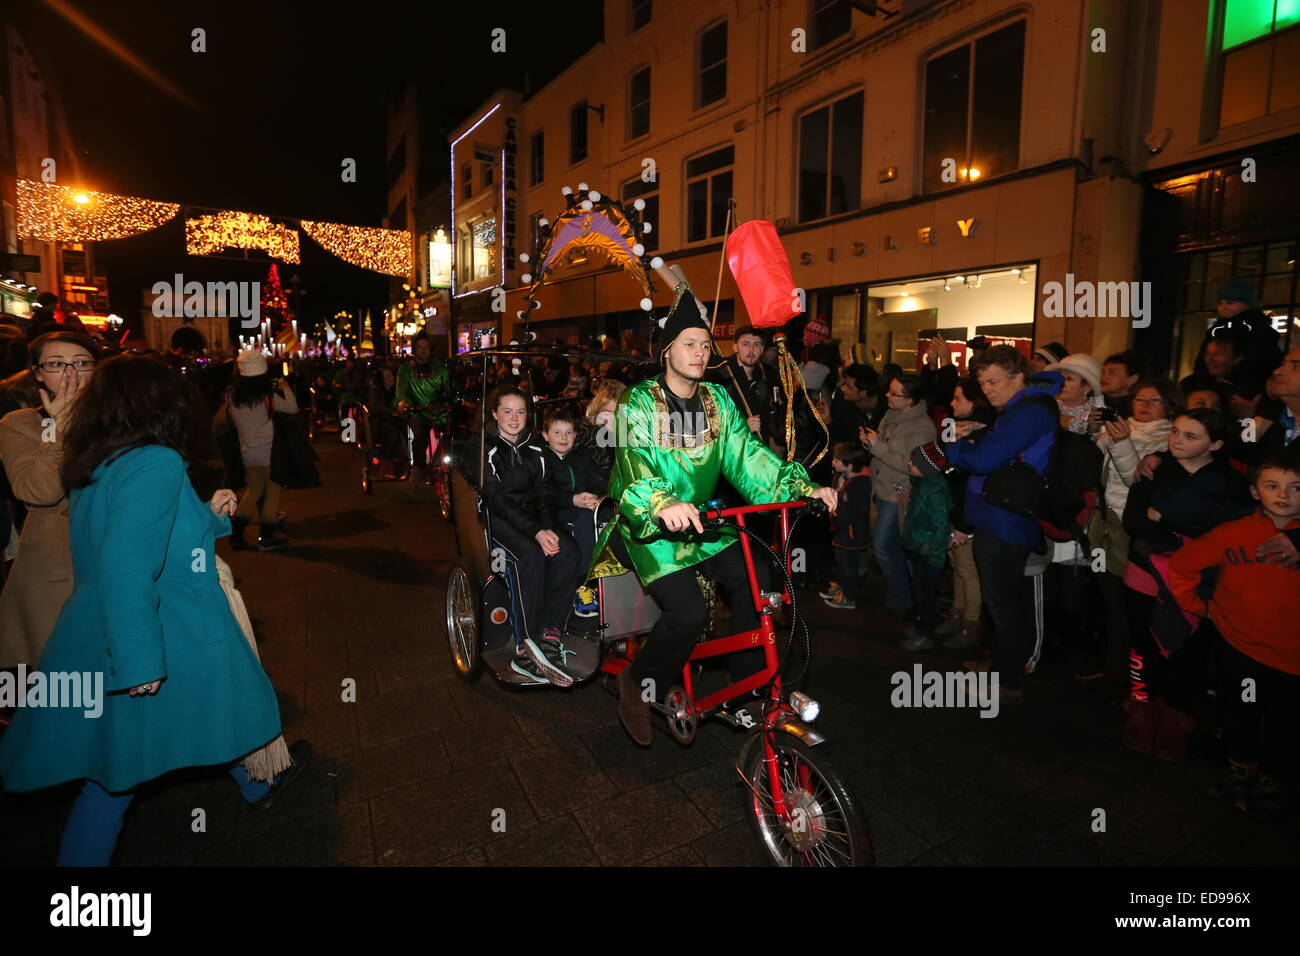 Immagine da la processione della luce street parade di Luxe come parte del Capodanno eventi del Festival nel centro della città di Dublino. Foto Stock